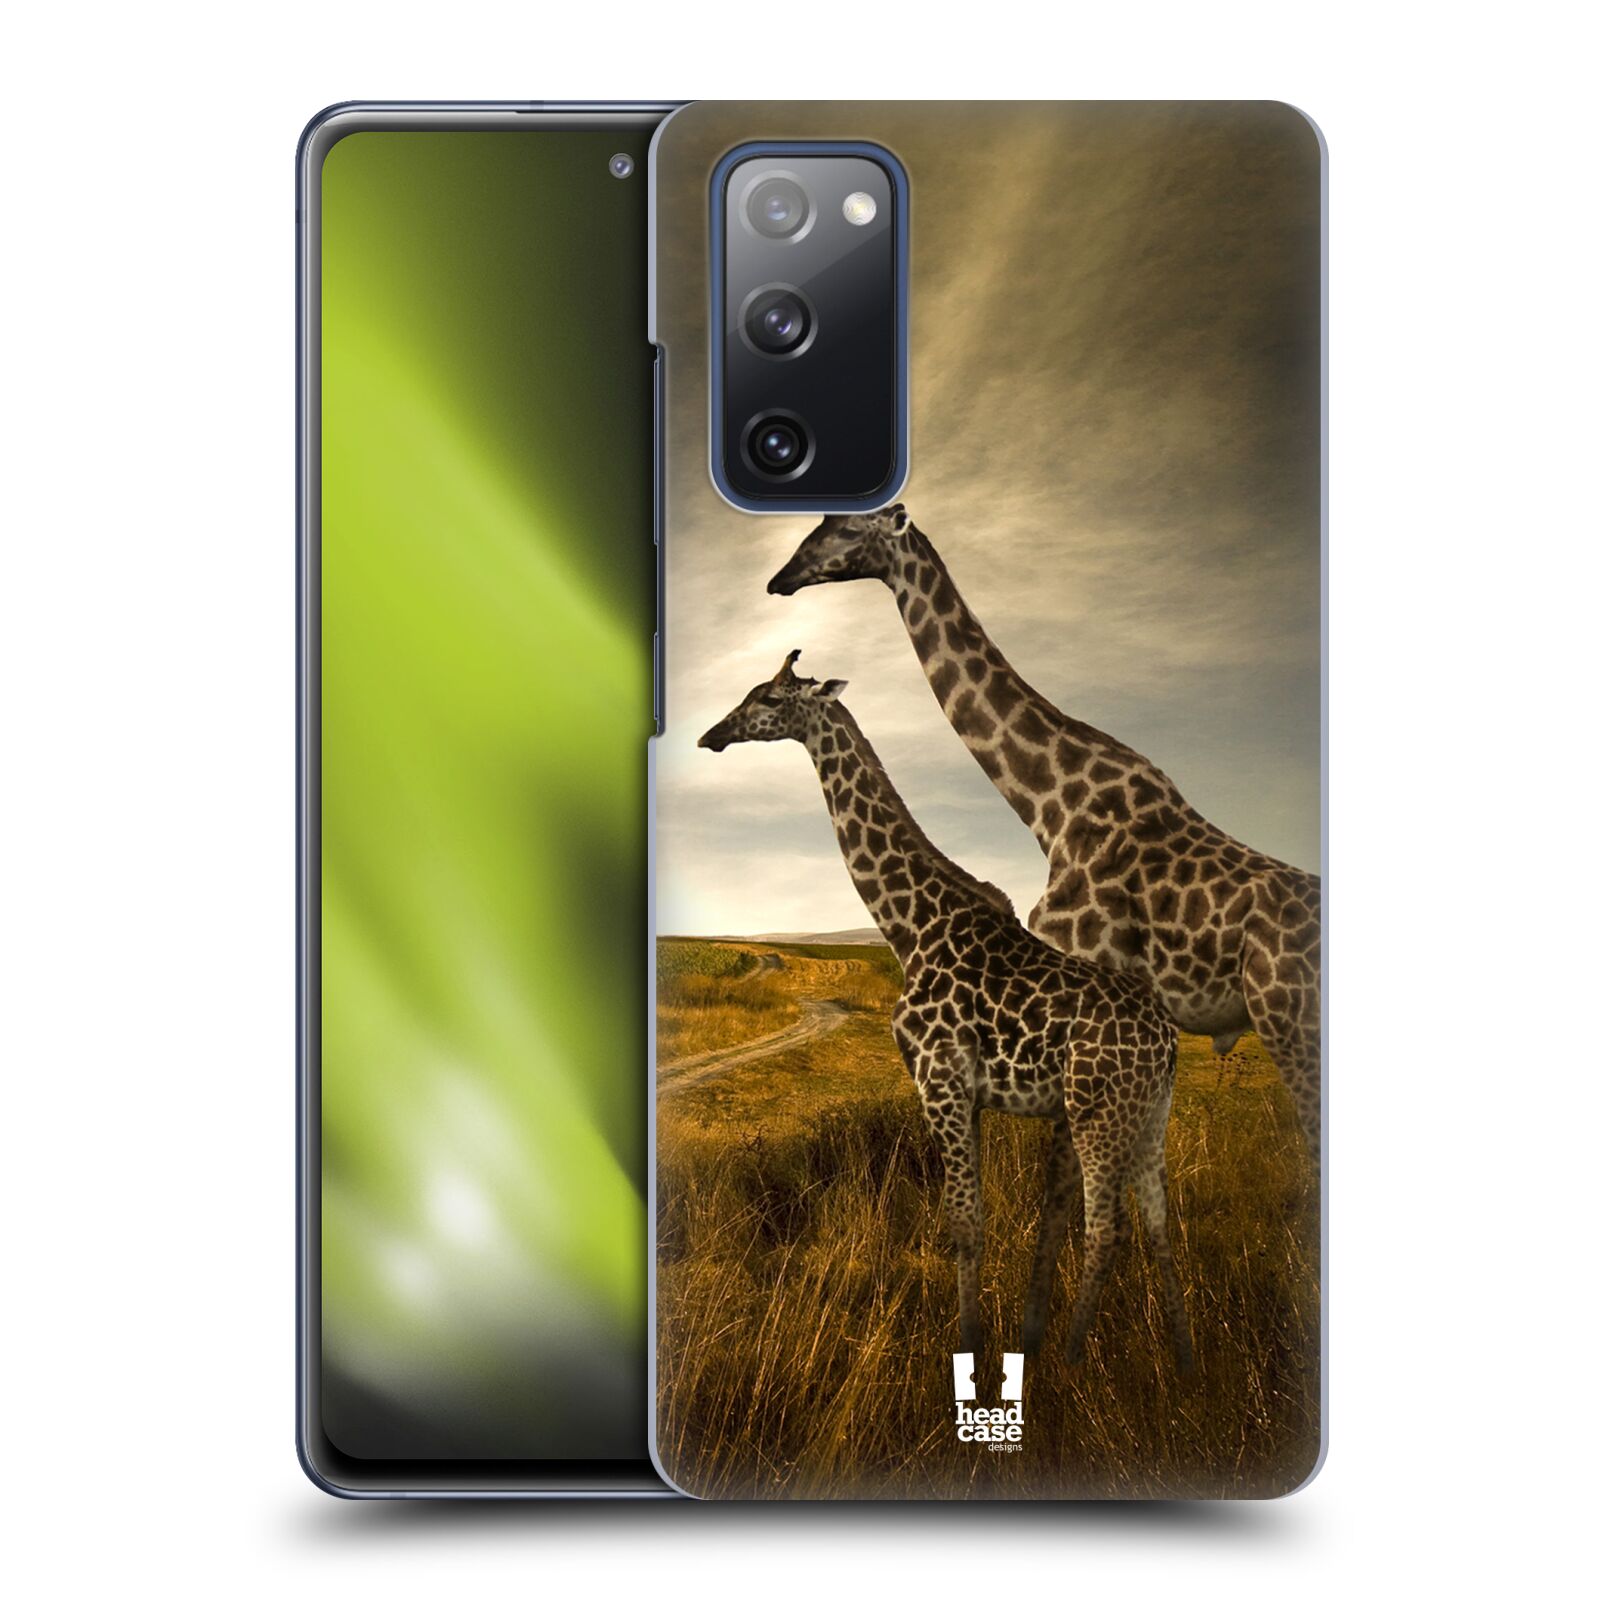 Zadní obal pro mobil Samsung Galaxy S20 FE / S20 FE 5G - HEAD CASE - Svět zvířat žirafy